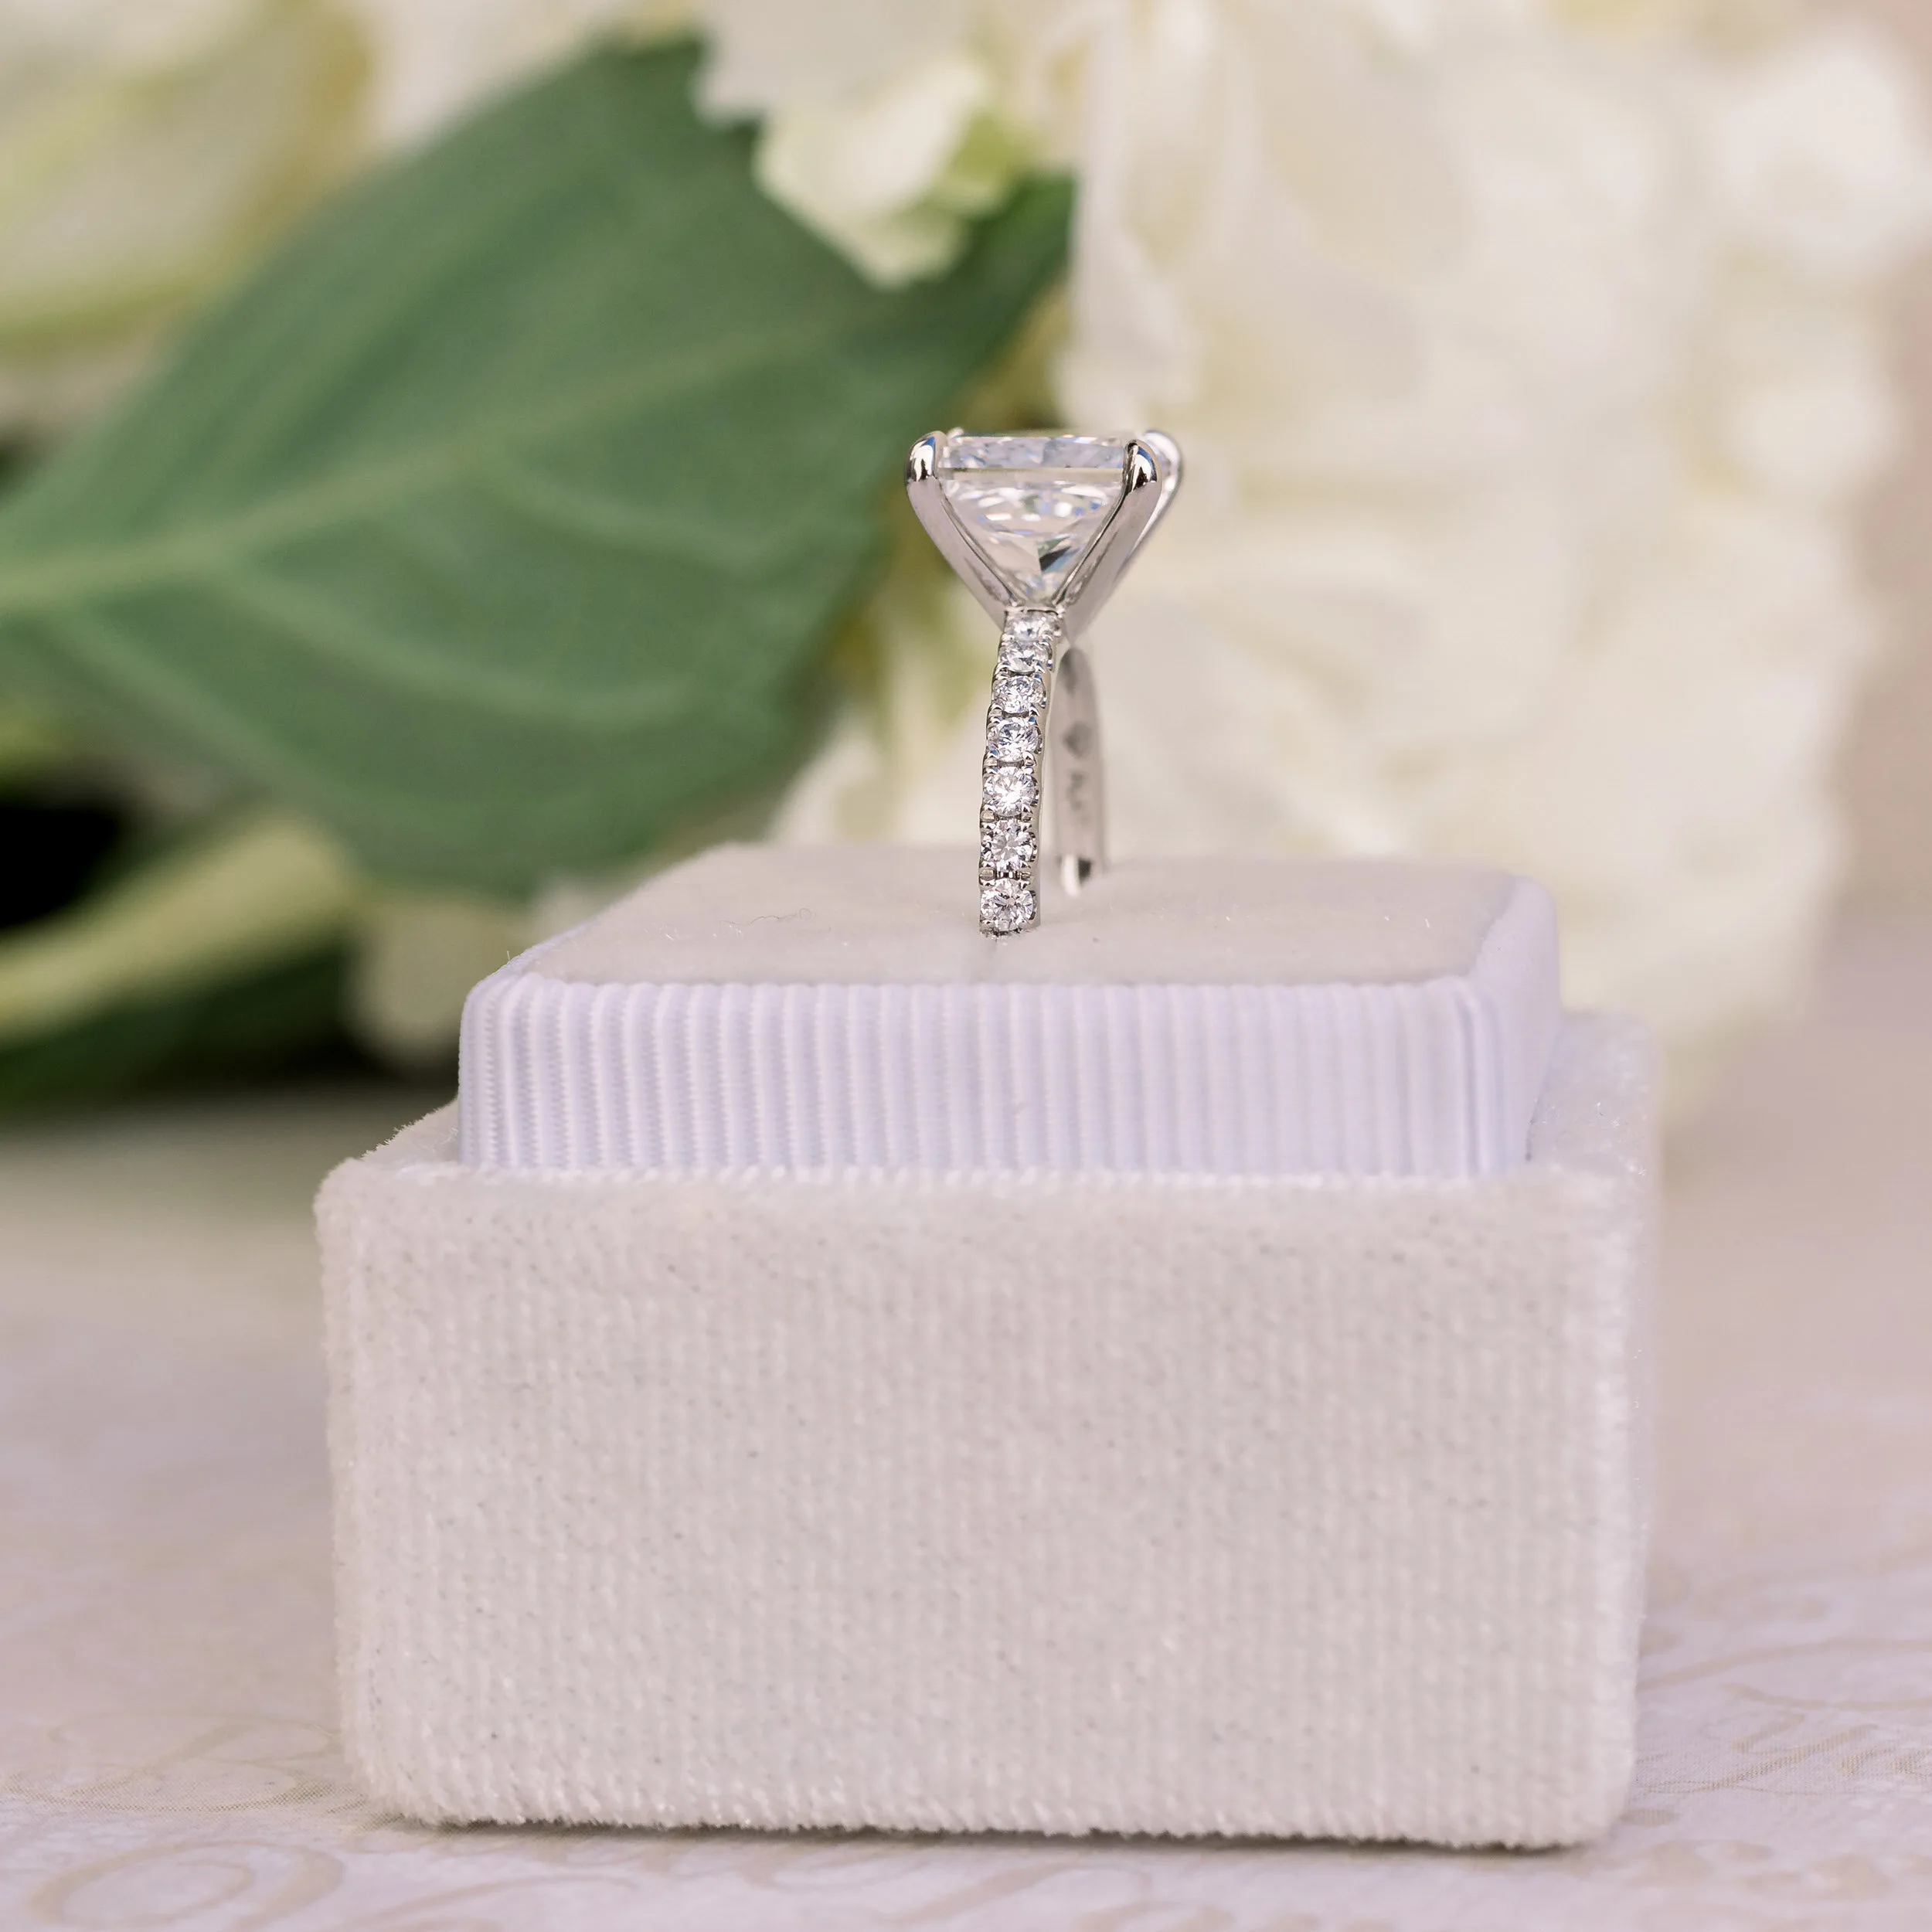 Platinum 2.5 Carat Princess Cut Lab Diamond Engagement Ring Ada Diamonds Design Ad-150 Profile View in Box